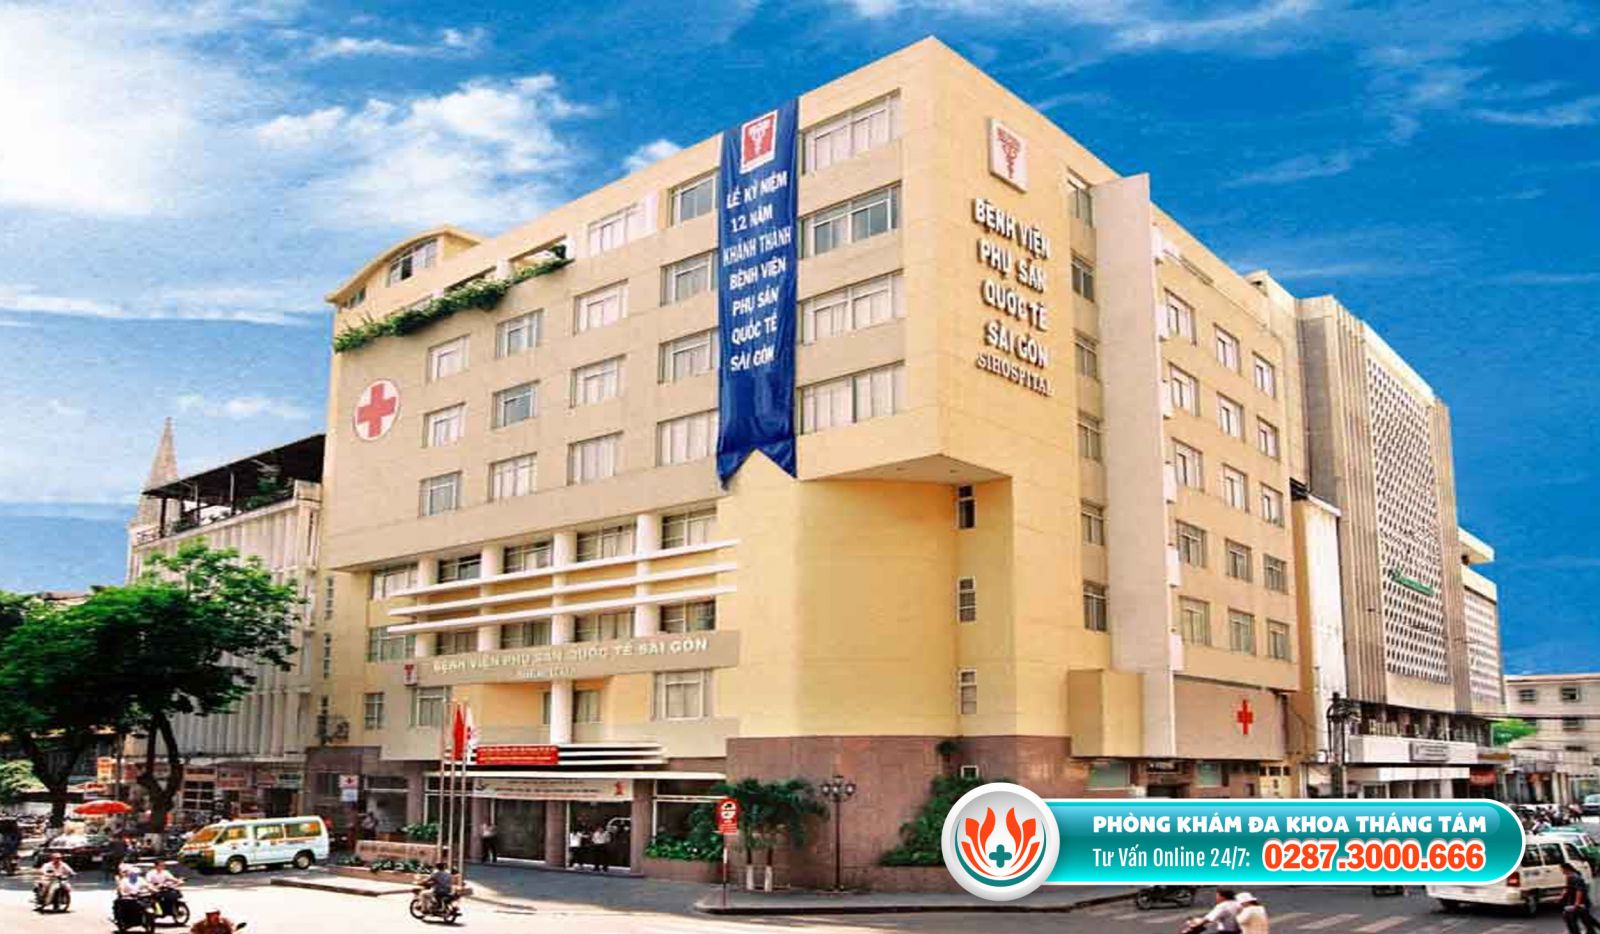 Bệnh viện Phụ sản Quốc tế Sài Gòn là trung tâm đình chỉ thai chất lượng